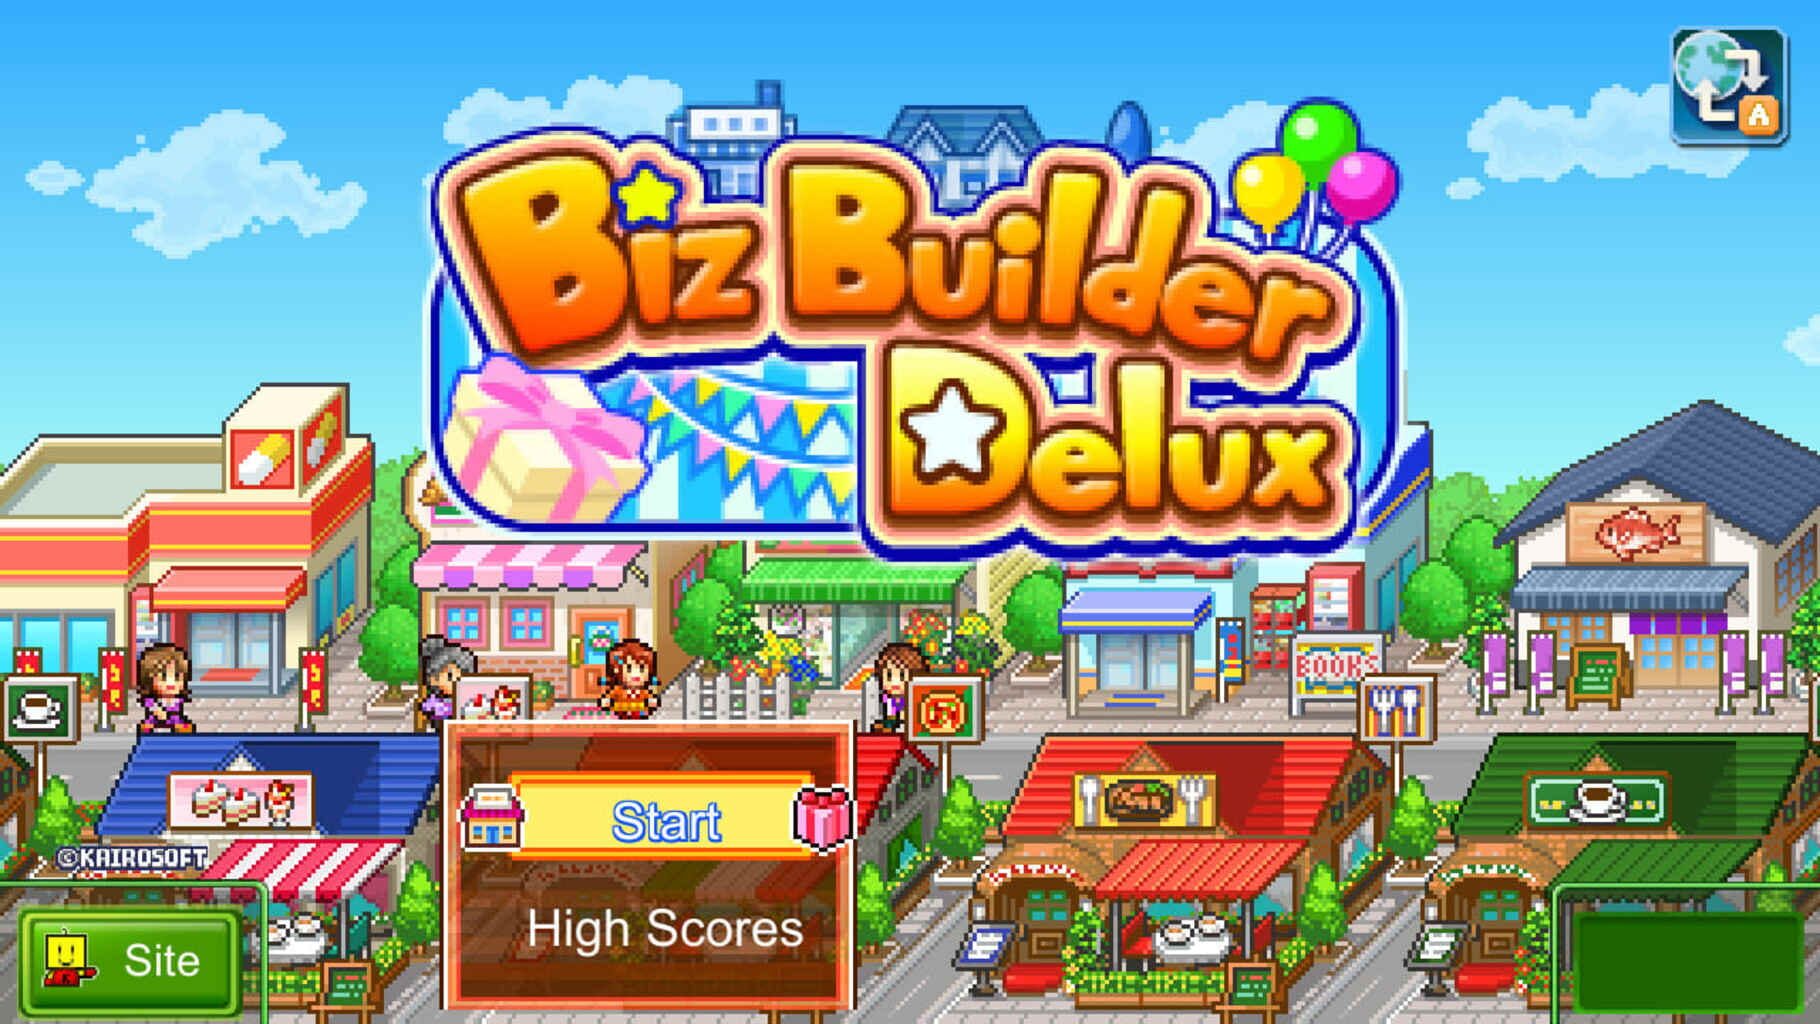 Biz Builder Delux screenshot